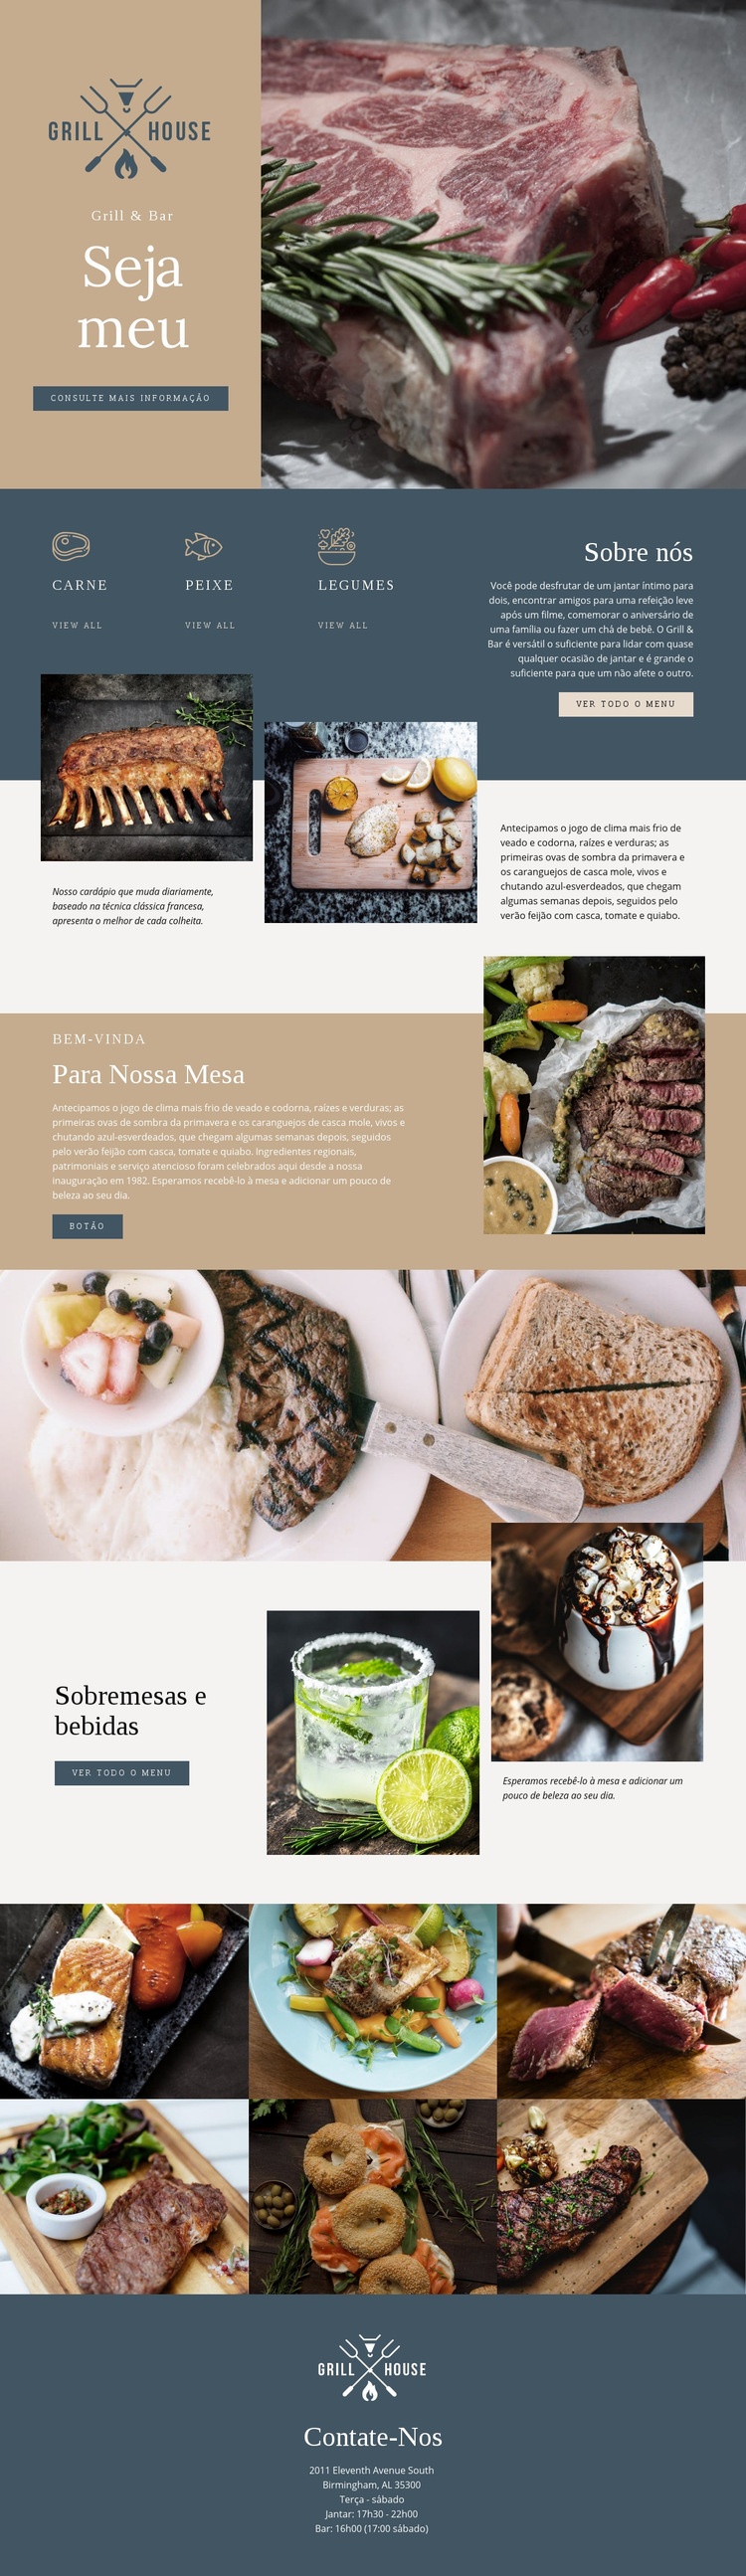 O melhor restaurante de churrascaria Construtor de sites HTML